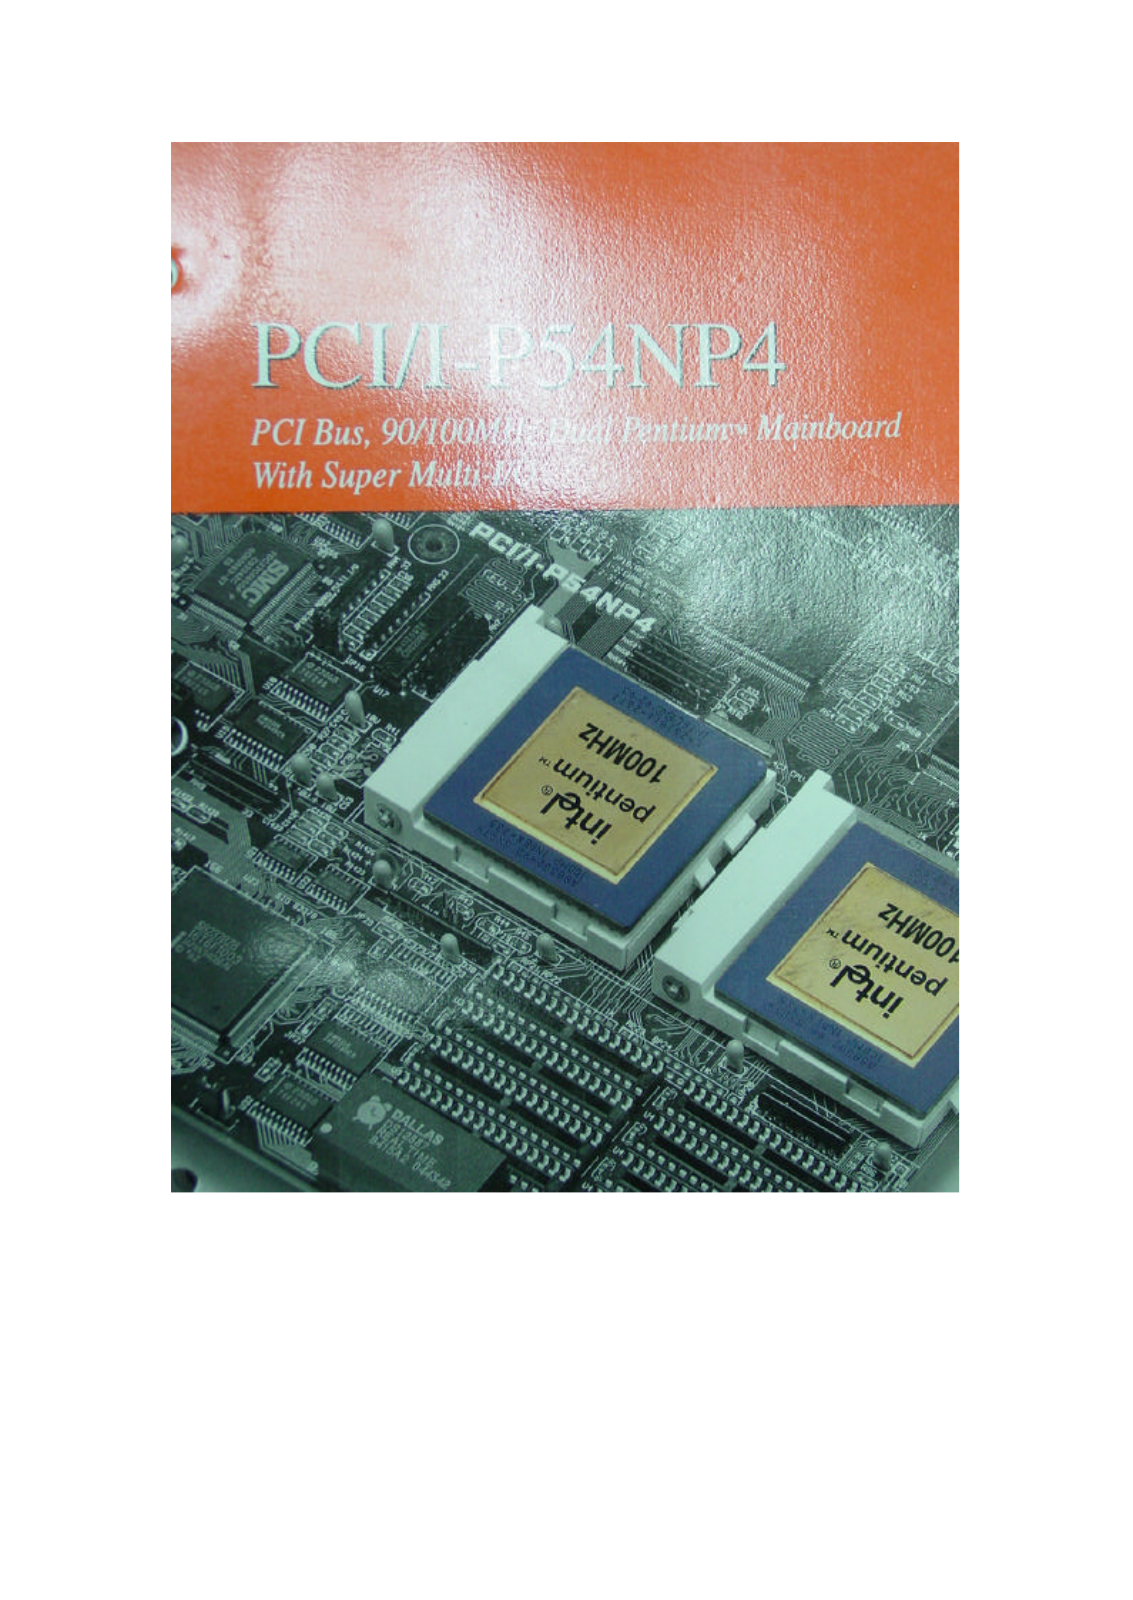 ASUS PCII-P54NP4 User Manual